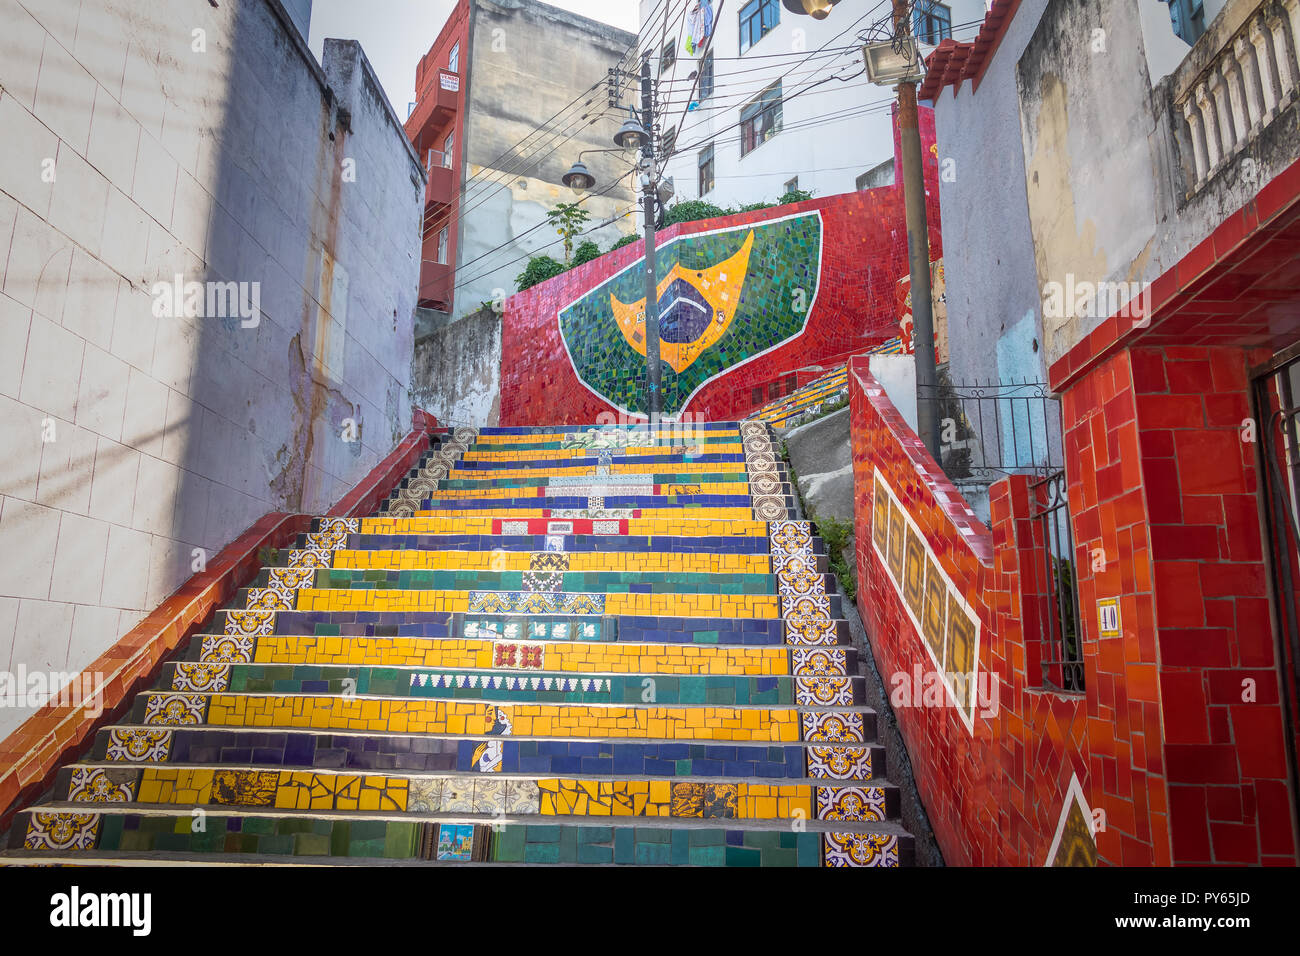 Escadaria Selaron Steps - Rio de Janeiro, Brazil Stock Photo